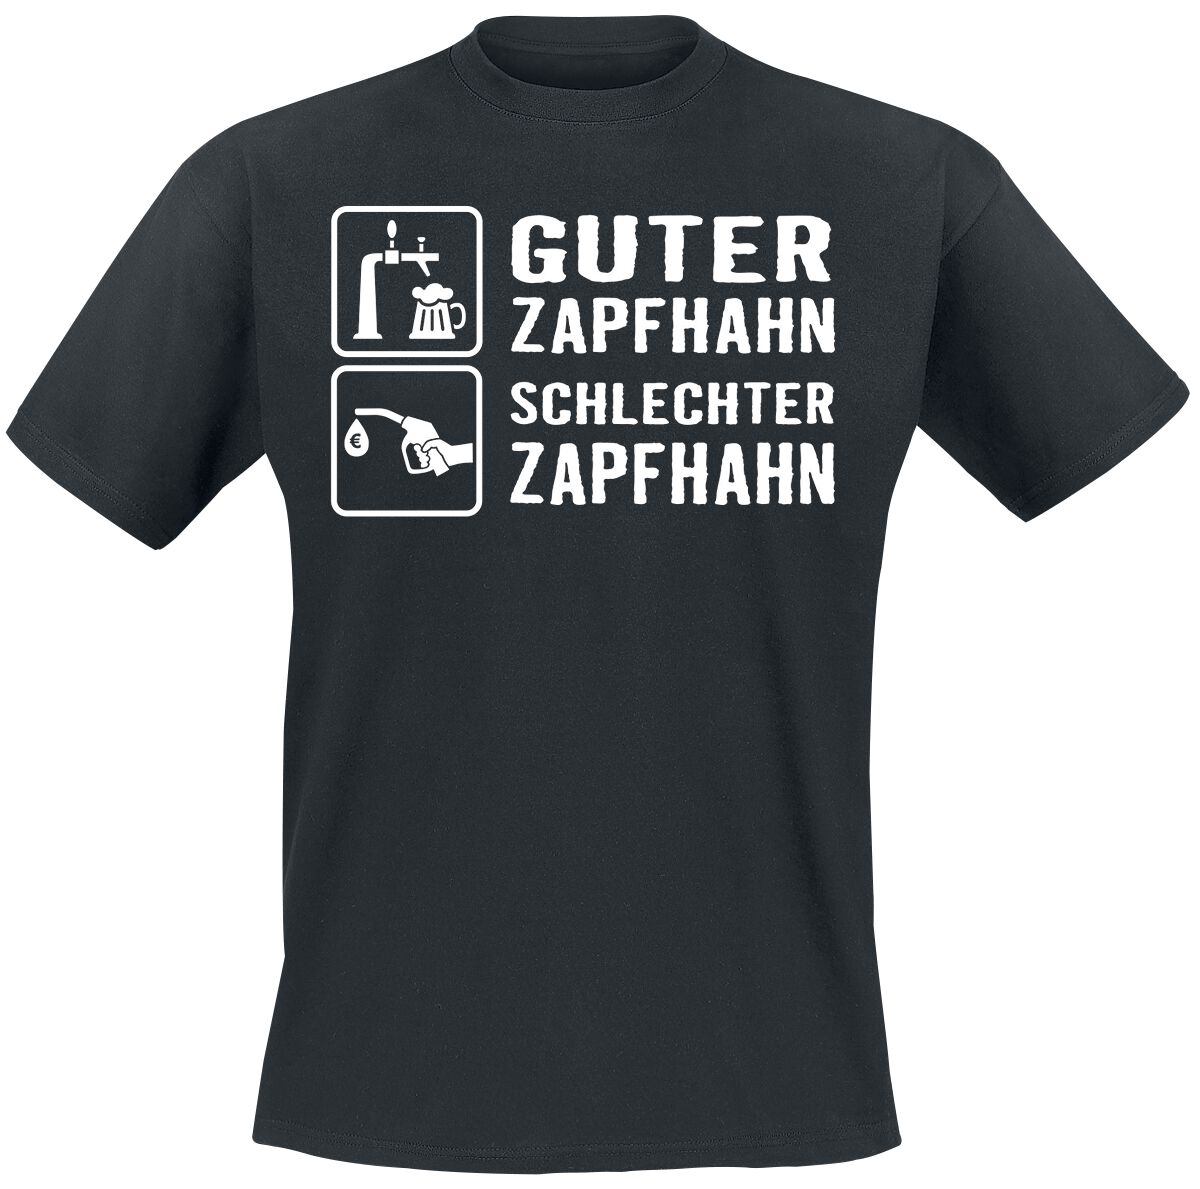 Sprüche Guter Zapfhahn - Schlechter Zapfhahn T-Shirt schwarz POD - Gildan Softstyle - 5538